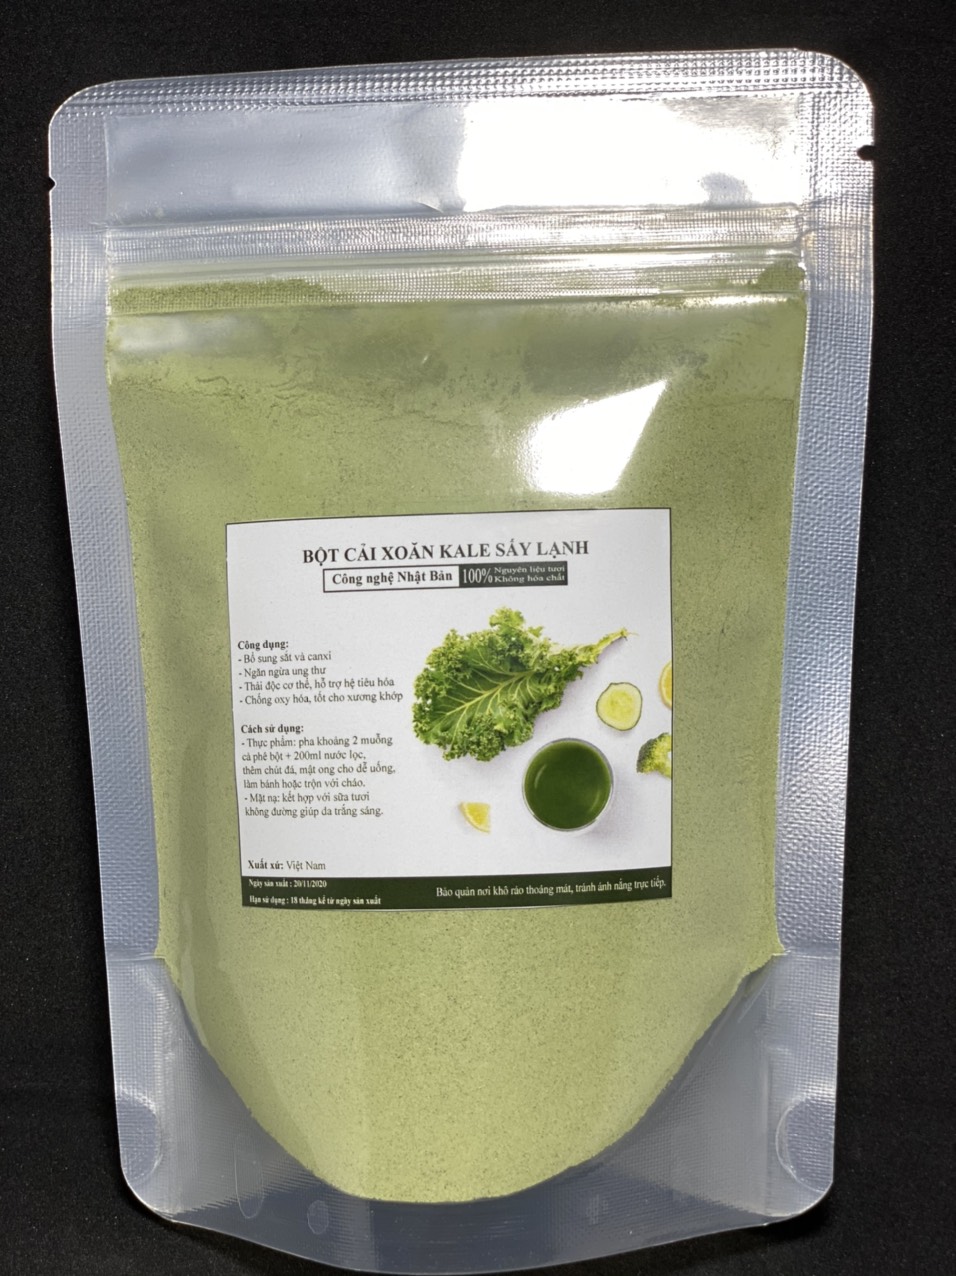 Bột cải xoăn Kale sấy lạnh nguyên chất, công nghệ sấy Nhật Bản